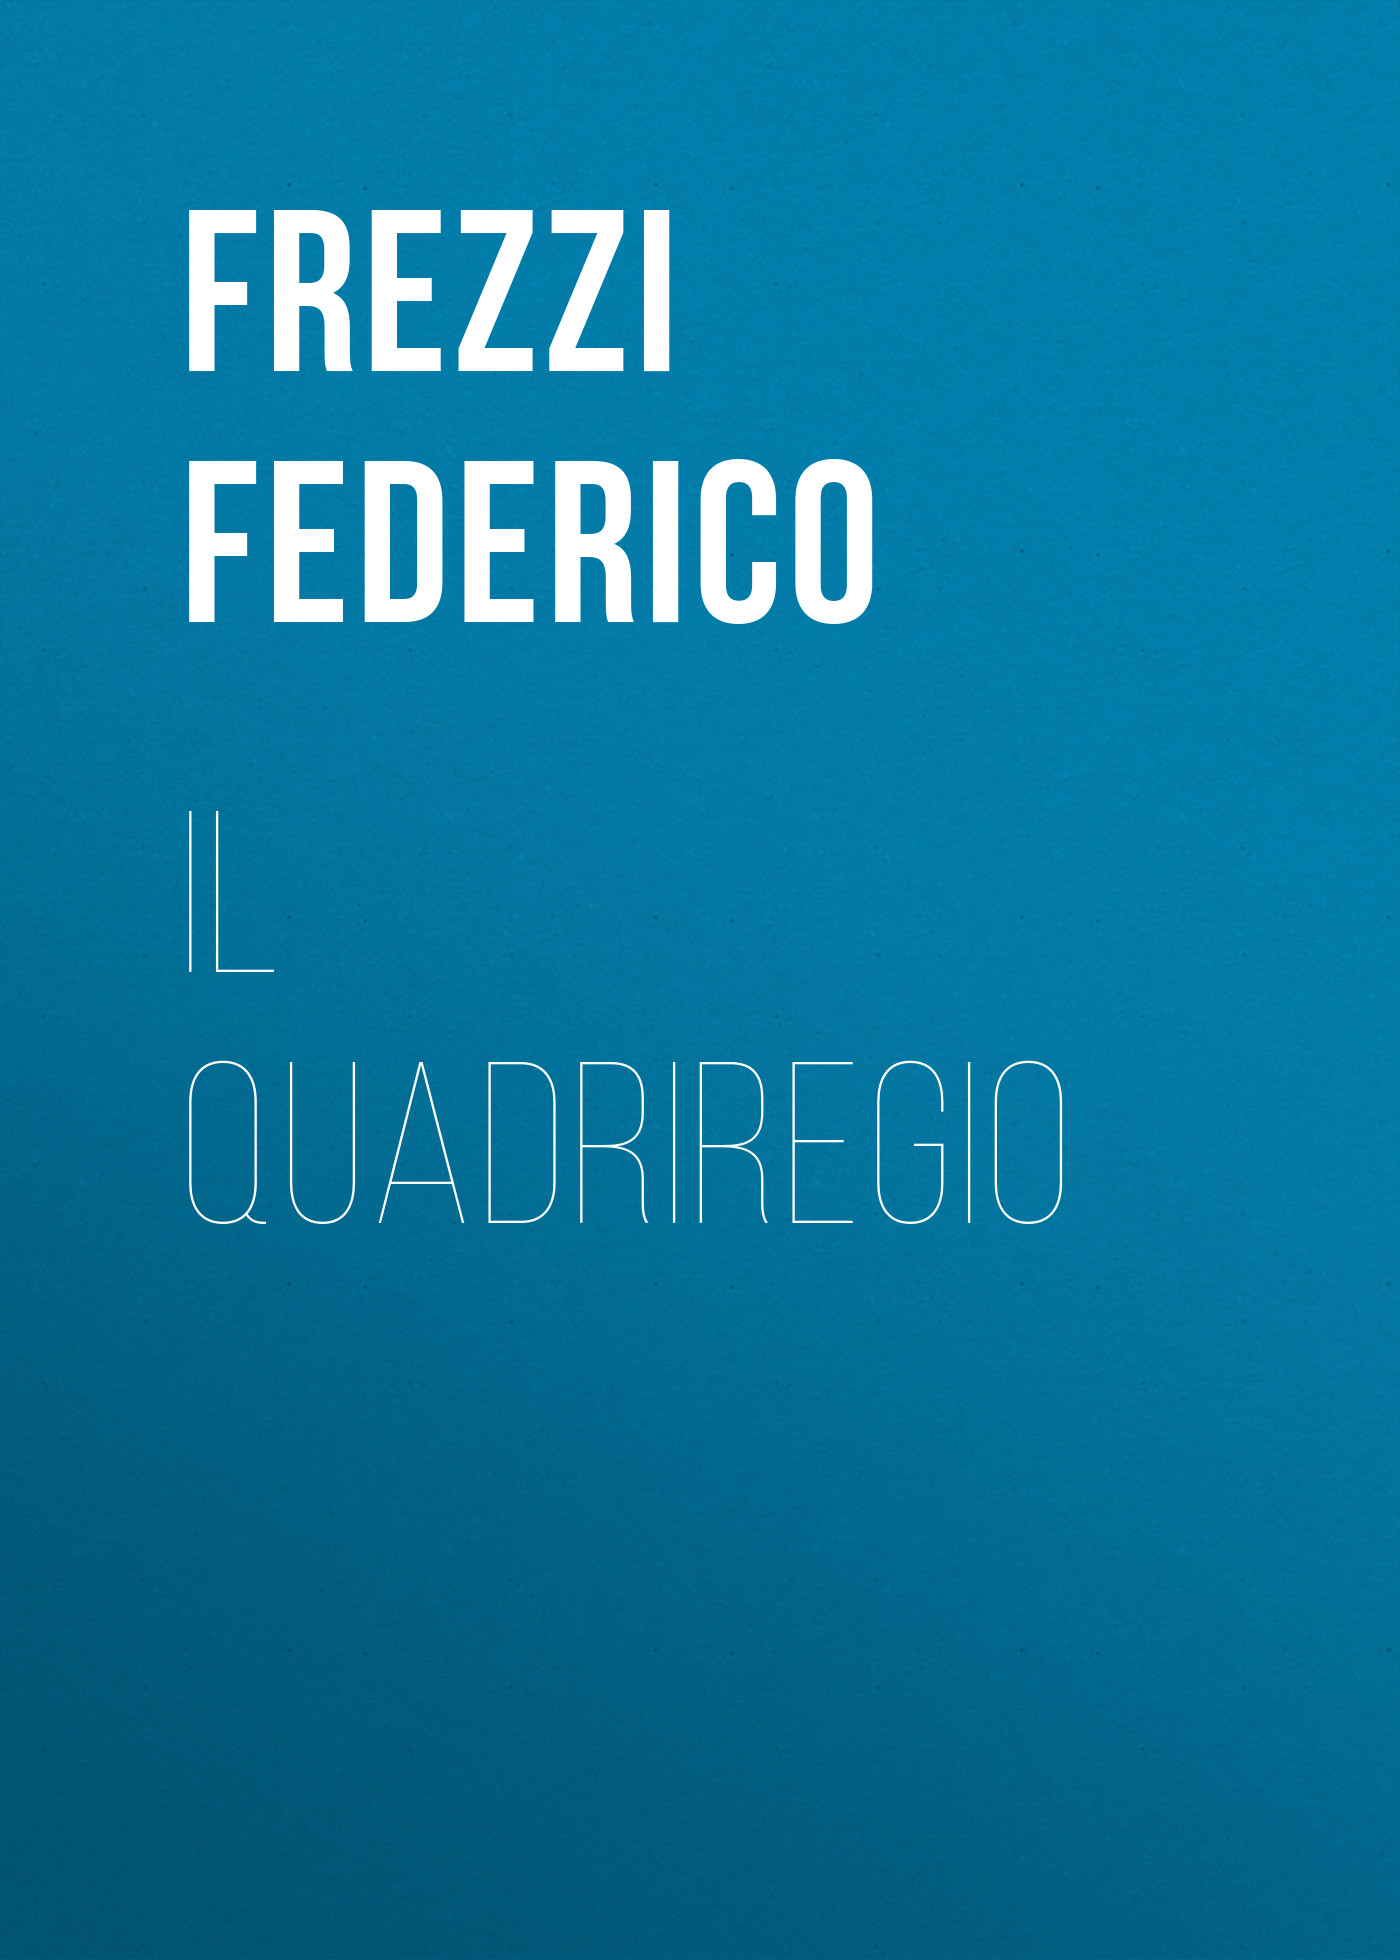 Книга Il Quadriregio из серии , созданная Federico Frezzi, может относится к жанру Поэзия, Зарубежная старинная литература, Зарубежная классика, Зарубежные стихи. Стоимость электронной книги Il Quadriregio с идентификатором 24860027 составляет 0 руб.